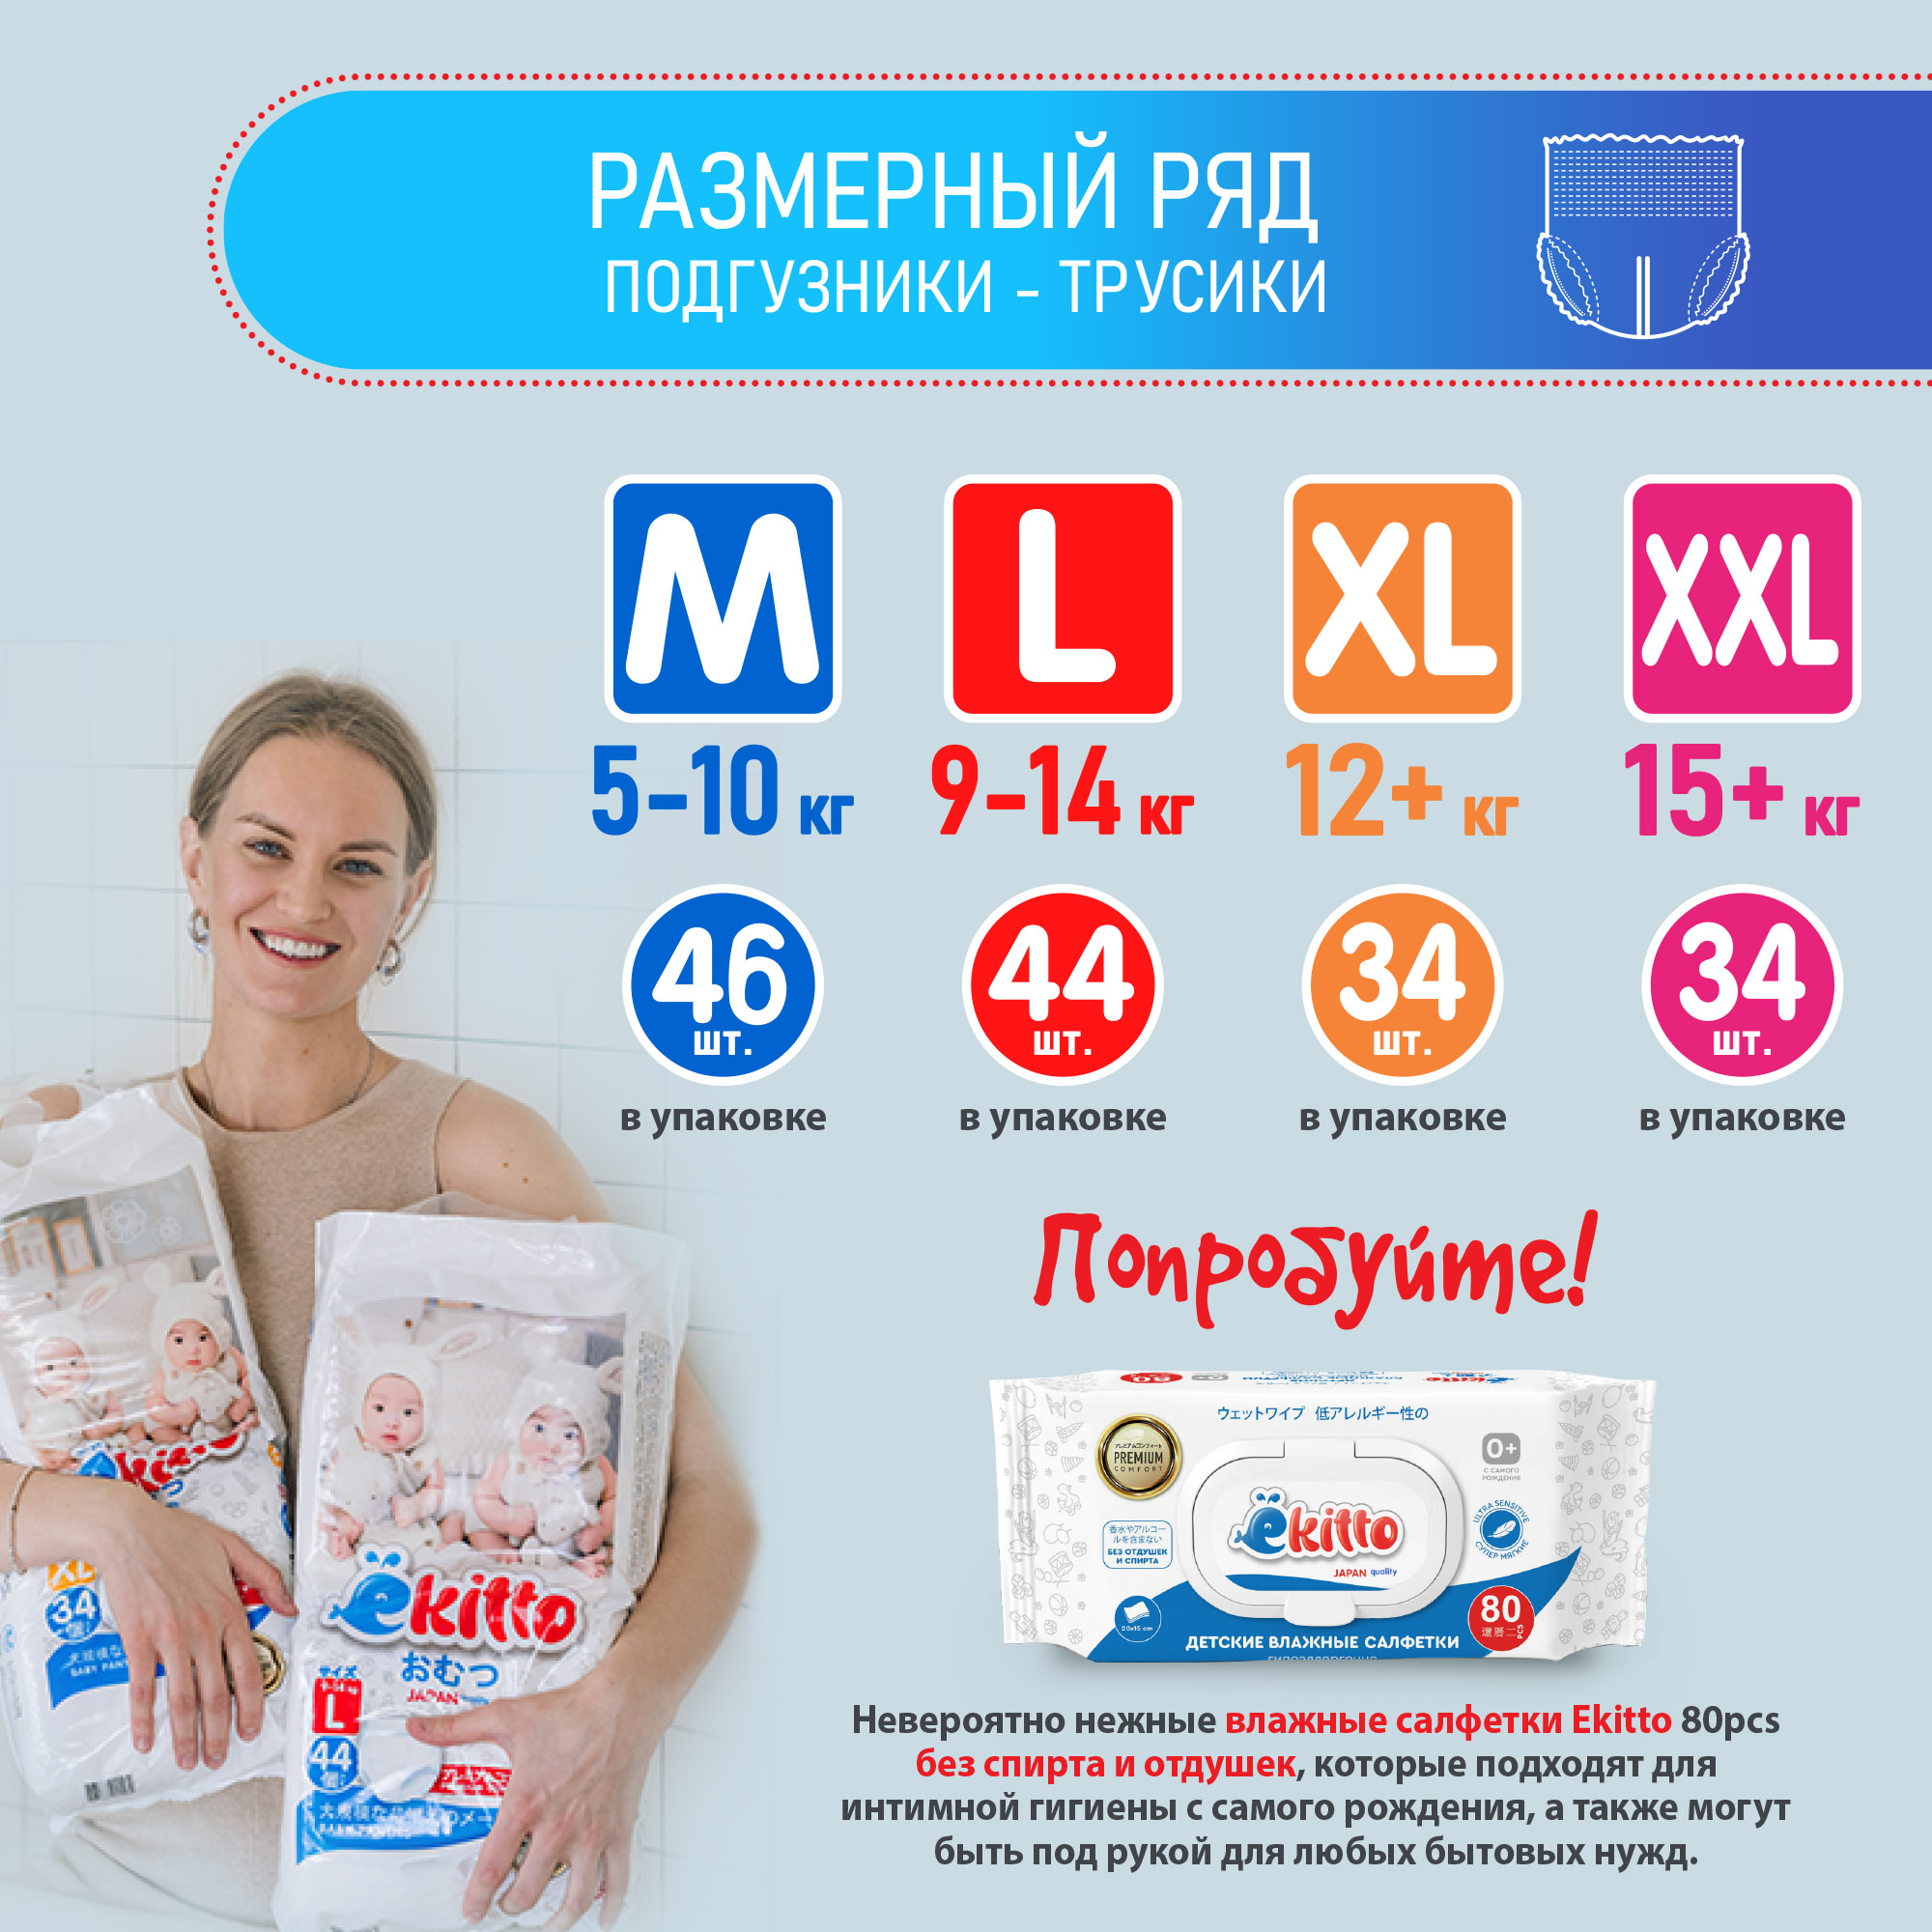 Подгузники-трусики Ekitto 3 размер M для новорожденных детей от 5-10 кг 46 шт - фото 9